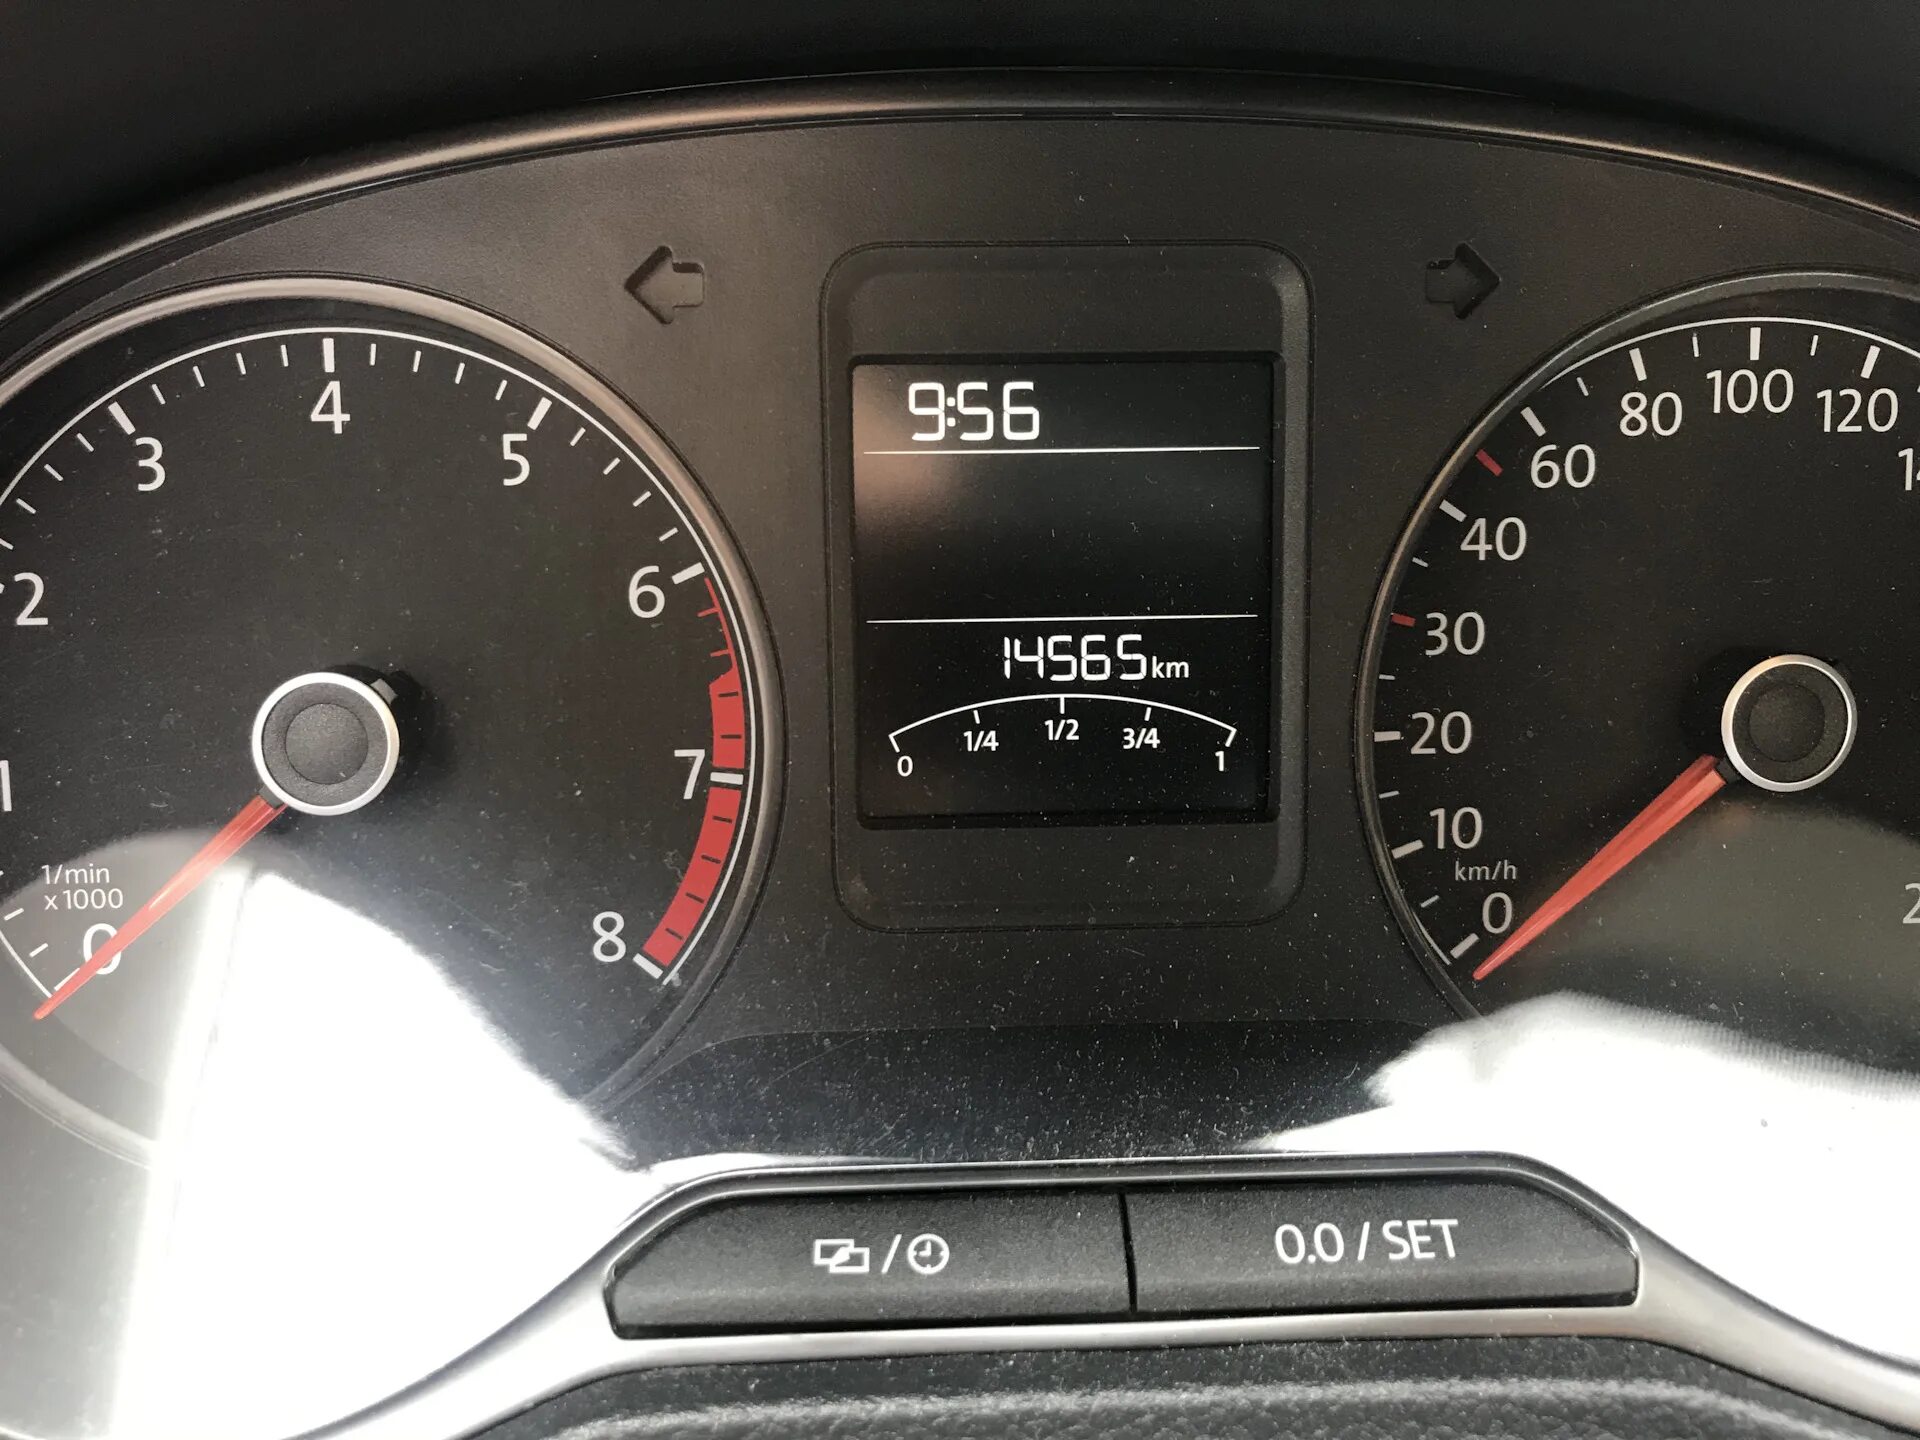 Индикатор уровня топлива Фольксваген поло седан 1.4 л. Поло 2л турбо. Скинуть инспекционный сервис